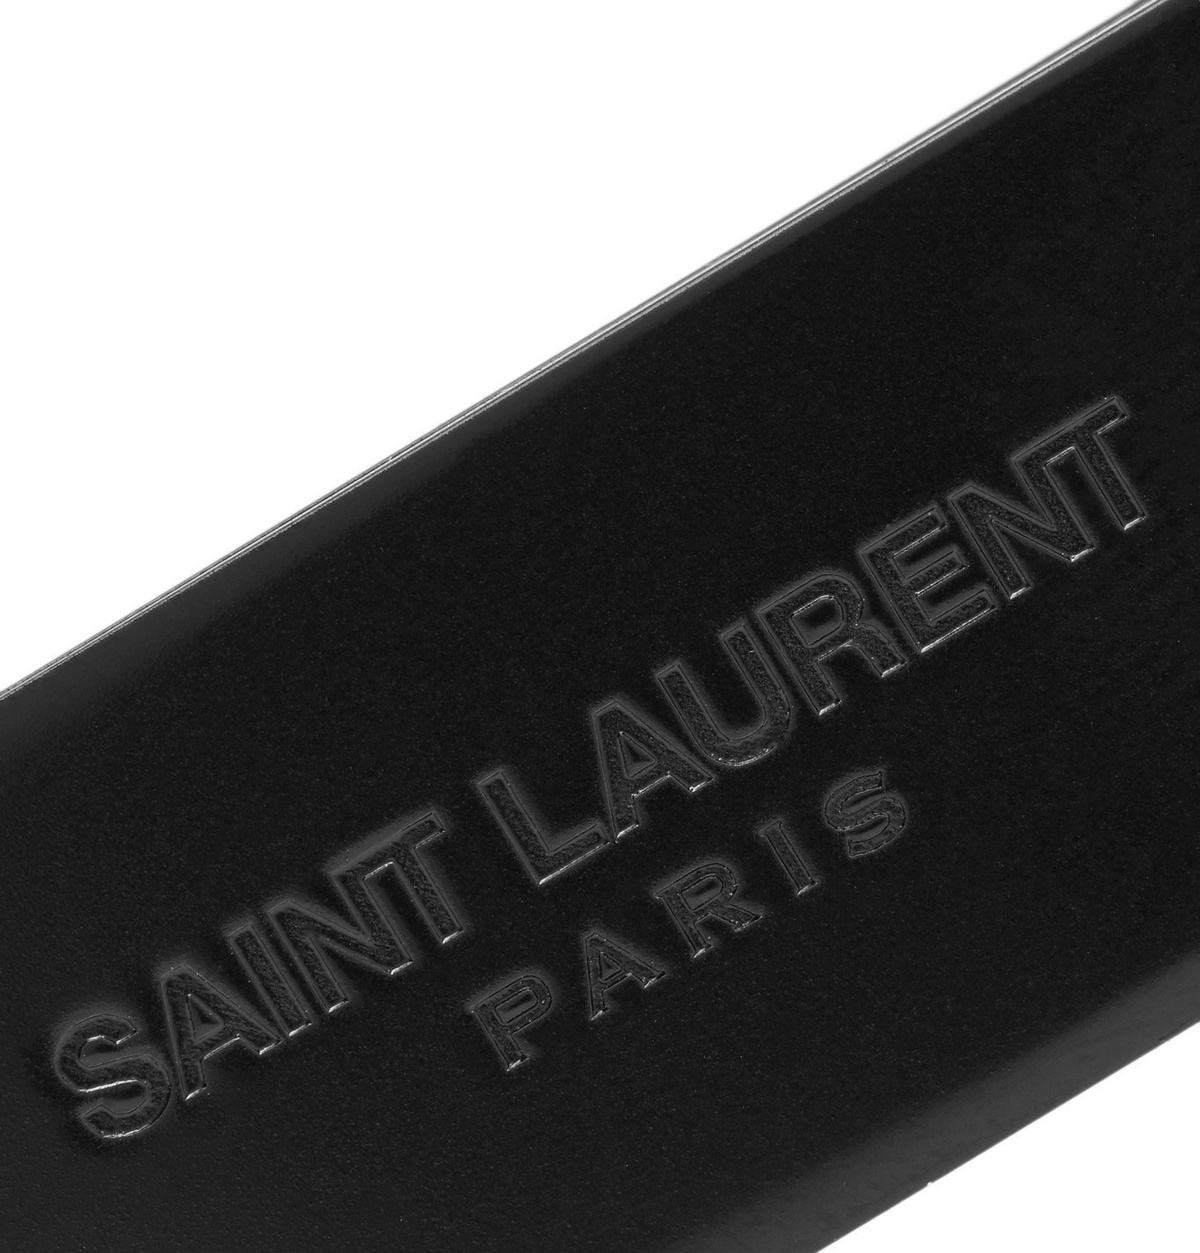 Saint Laurent Money Clip in Metallic Silver